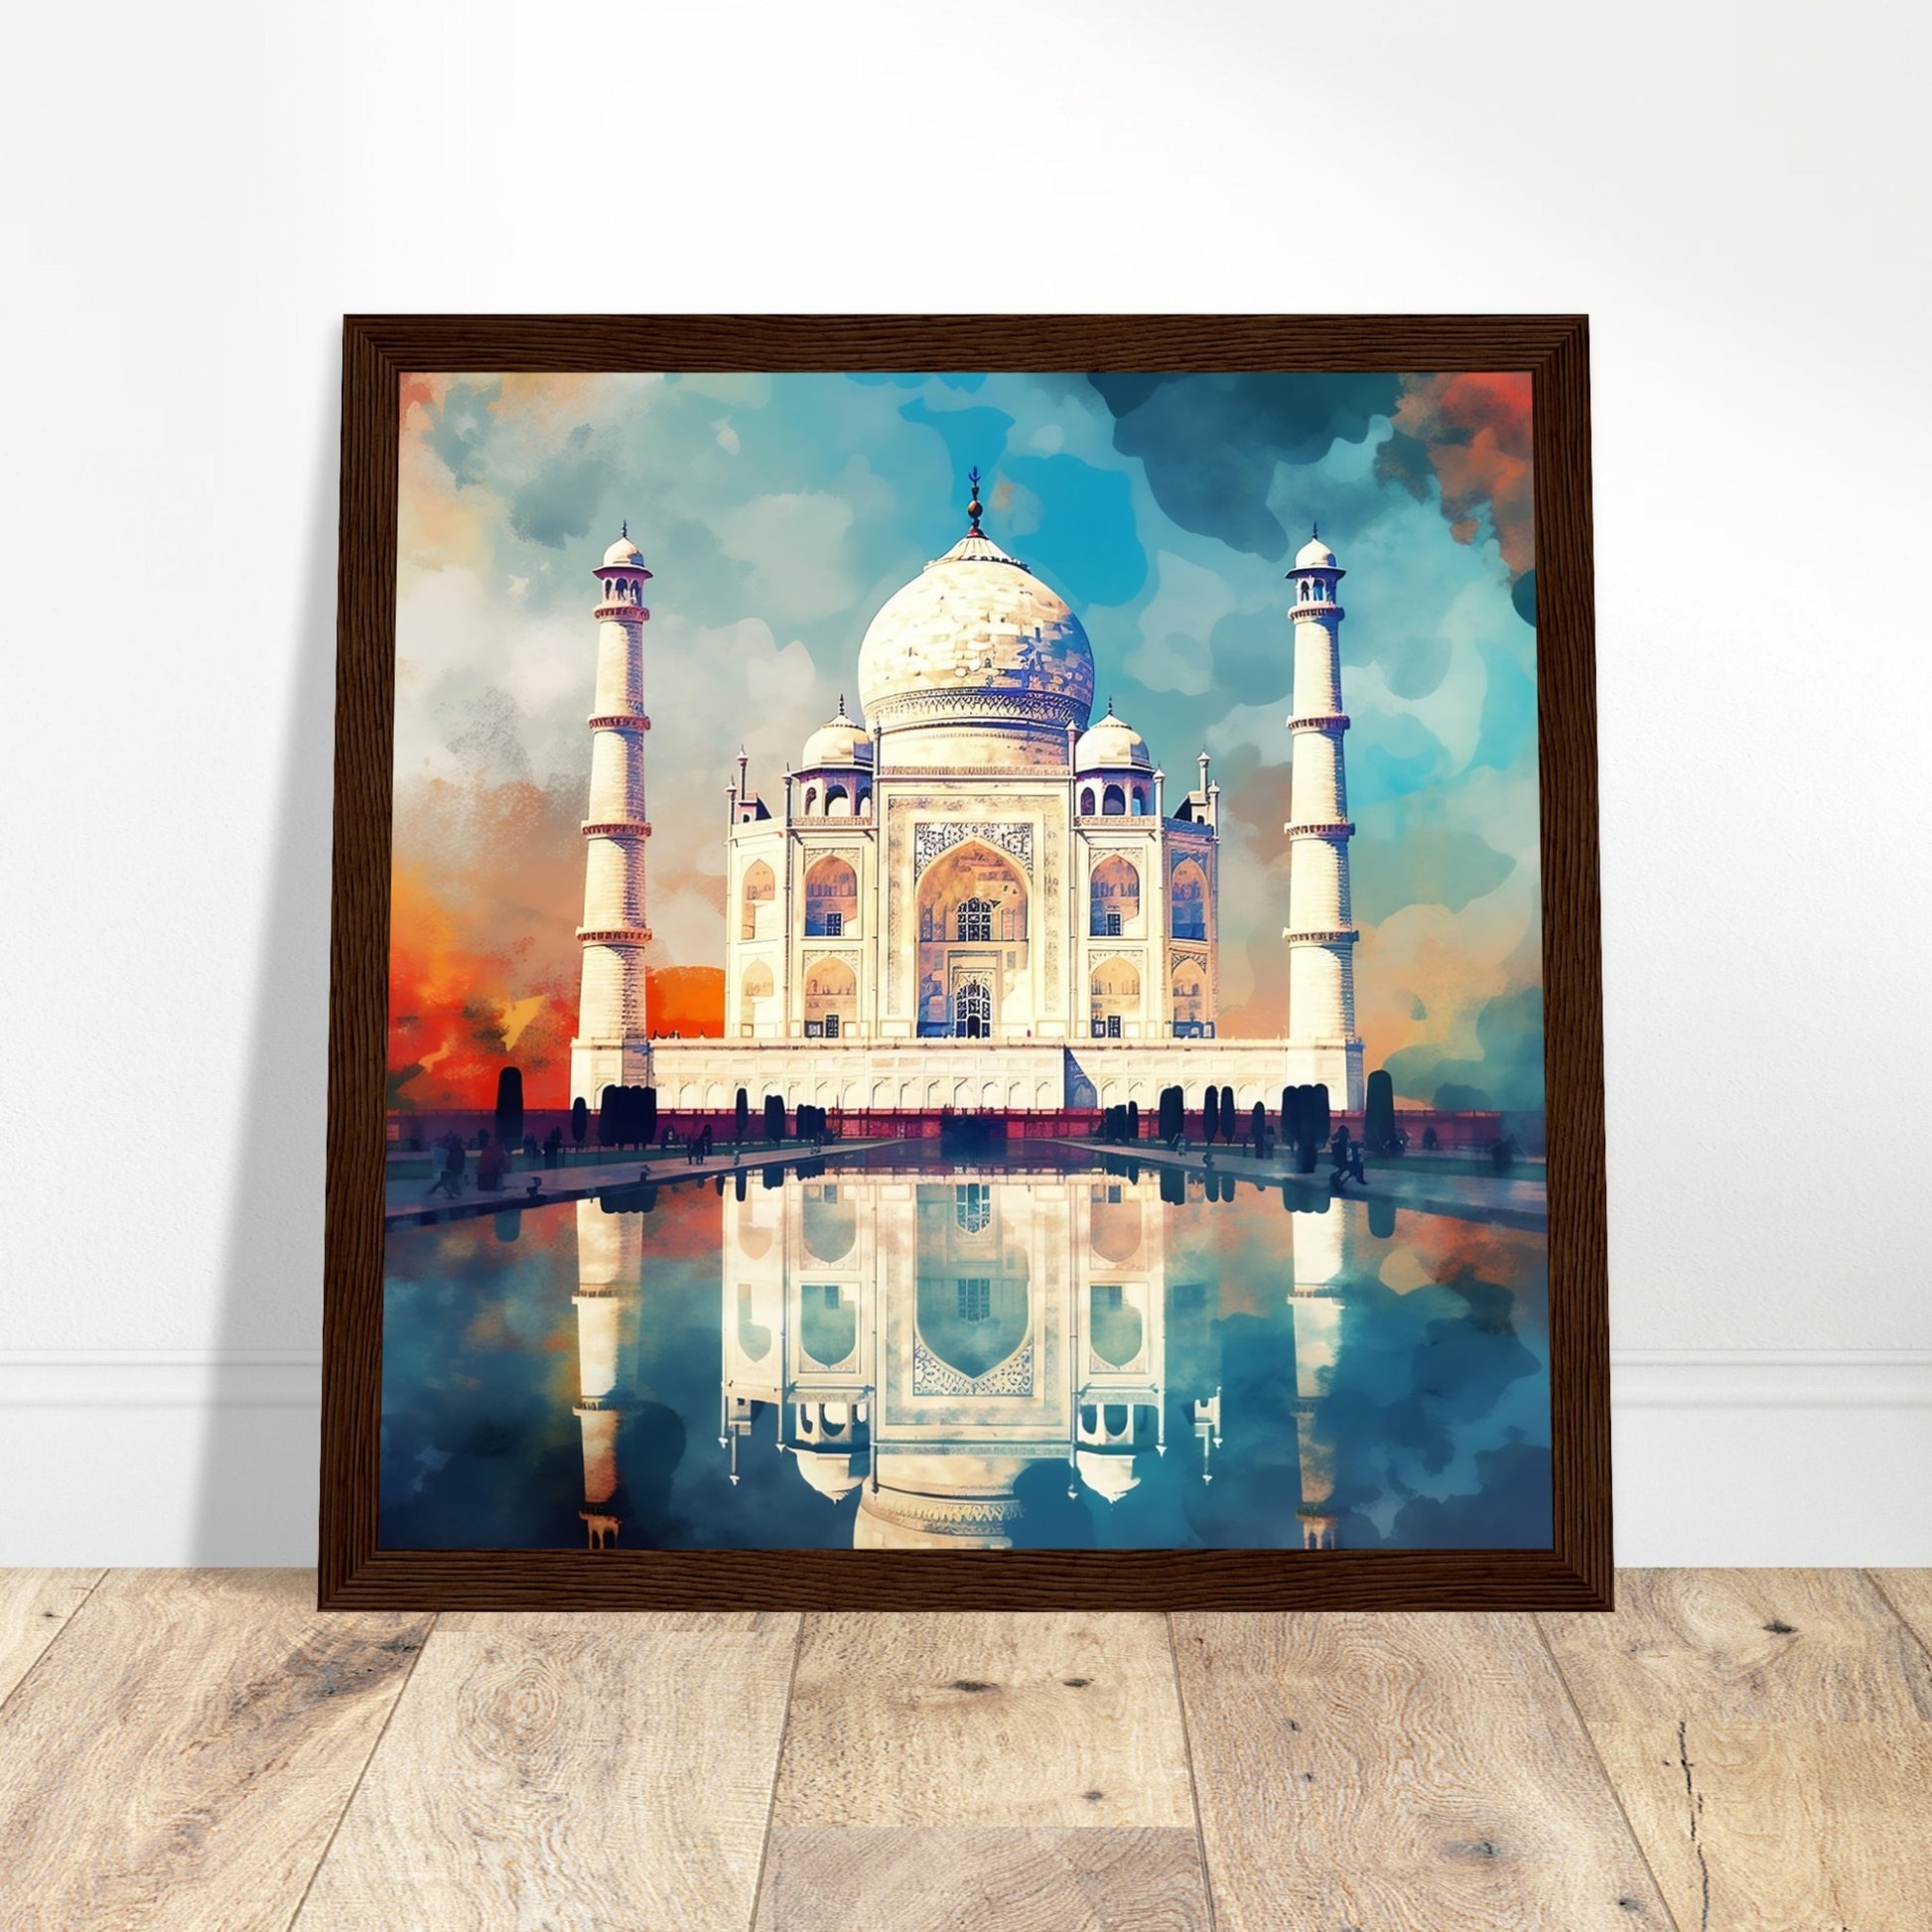 Taj Mahal Artwork - Print Room Ltd Dark wood frame 30x30 cm / 12x12"